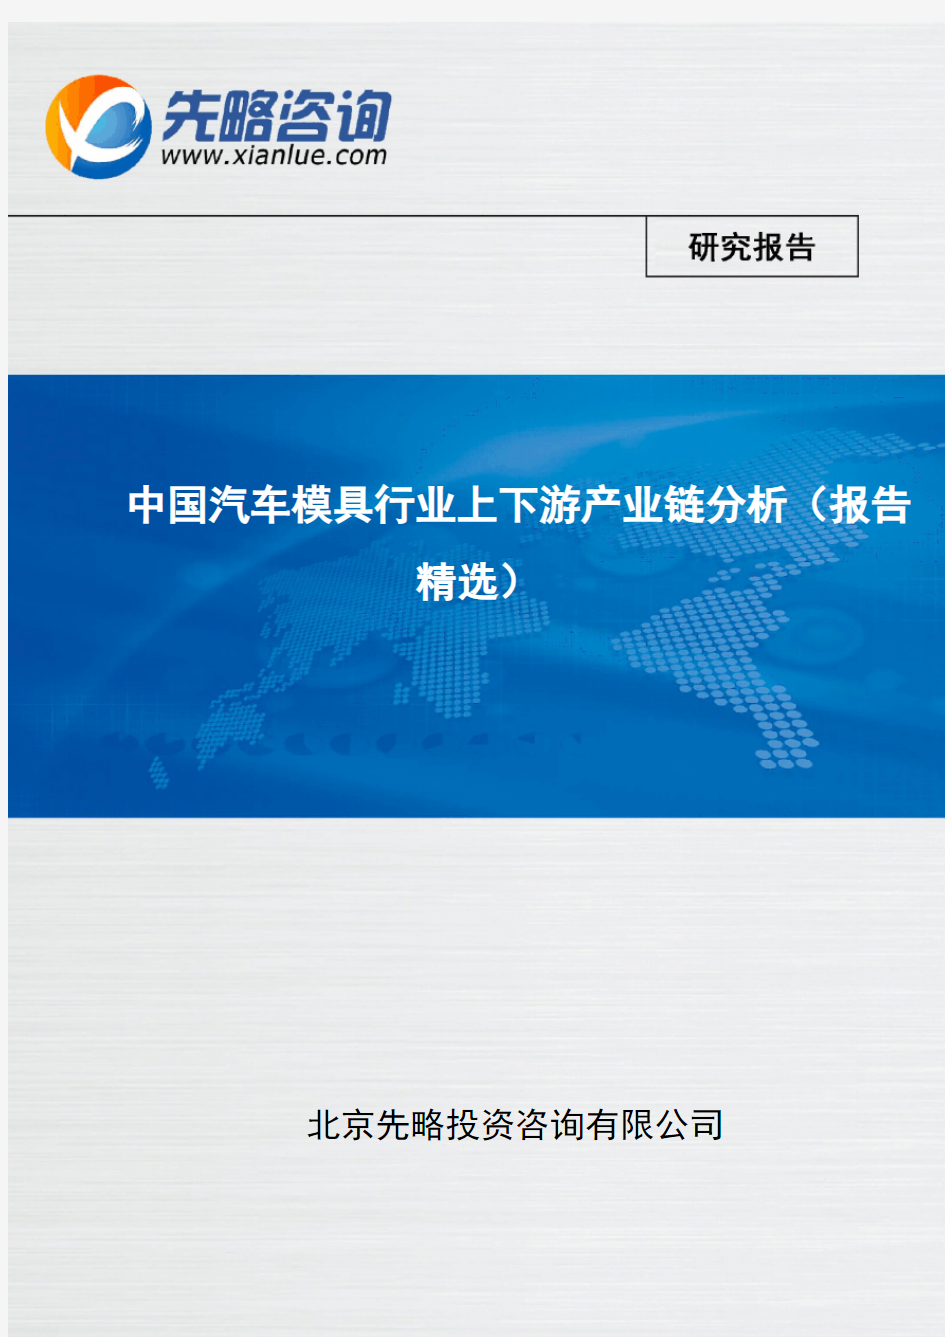 中国汽车模具行业上下游产业链分析(报告精选)